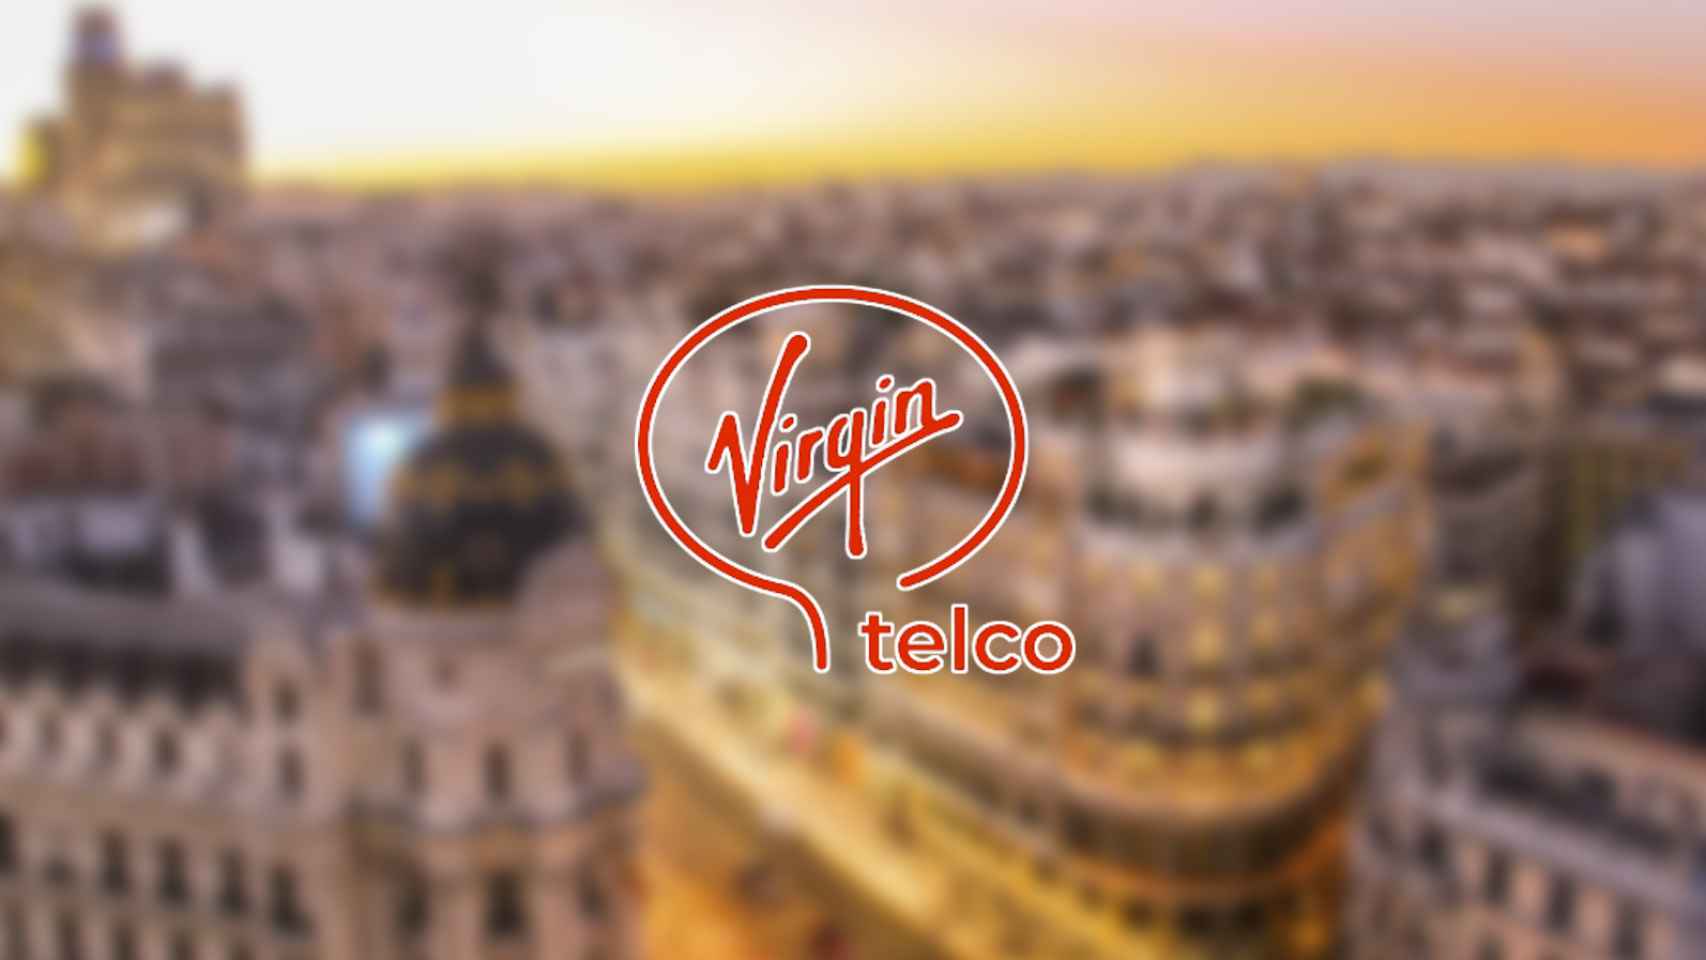 Virgin telco: tarifas y precios de la nueva operadora española